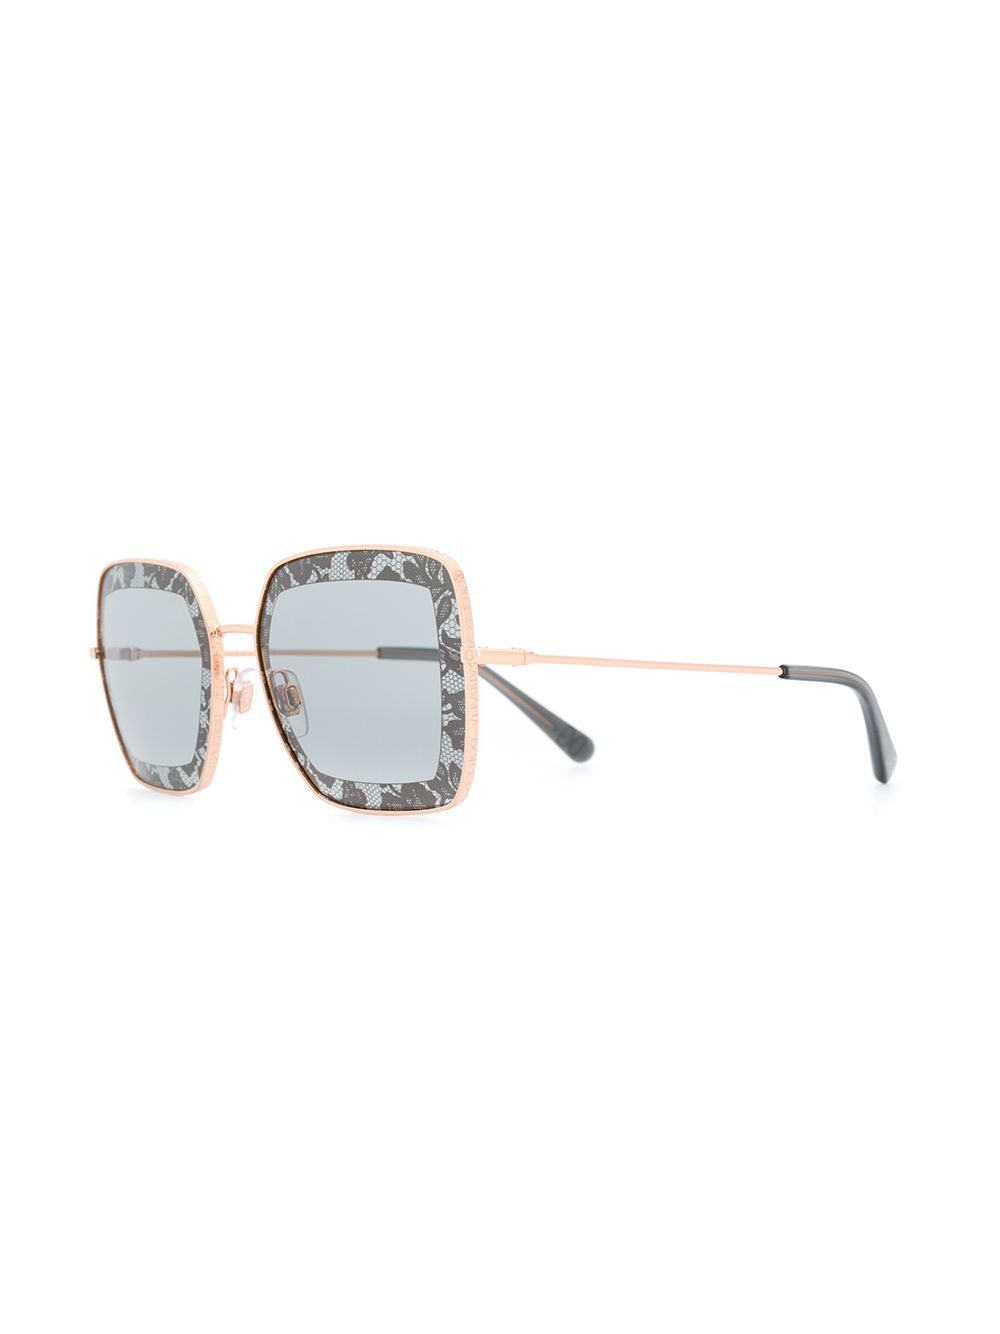 фото Dolce & gabbana eyewear солнцезащитные очки в квадратной оправе с кружевным узором